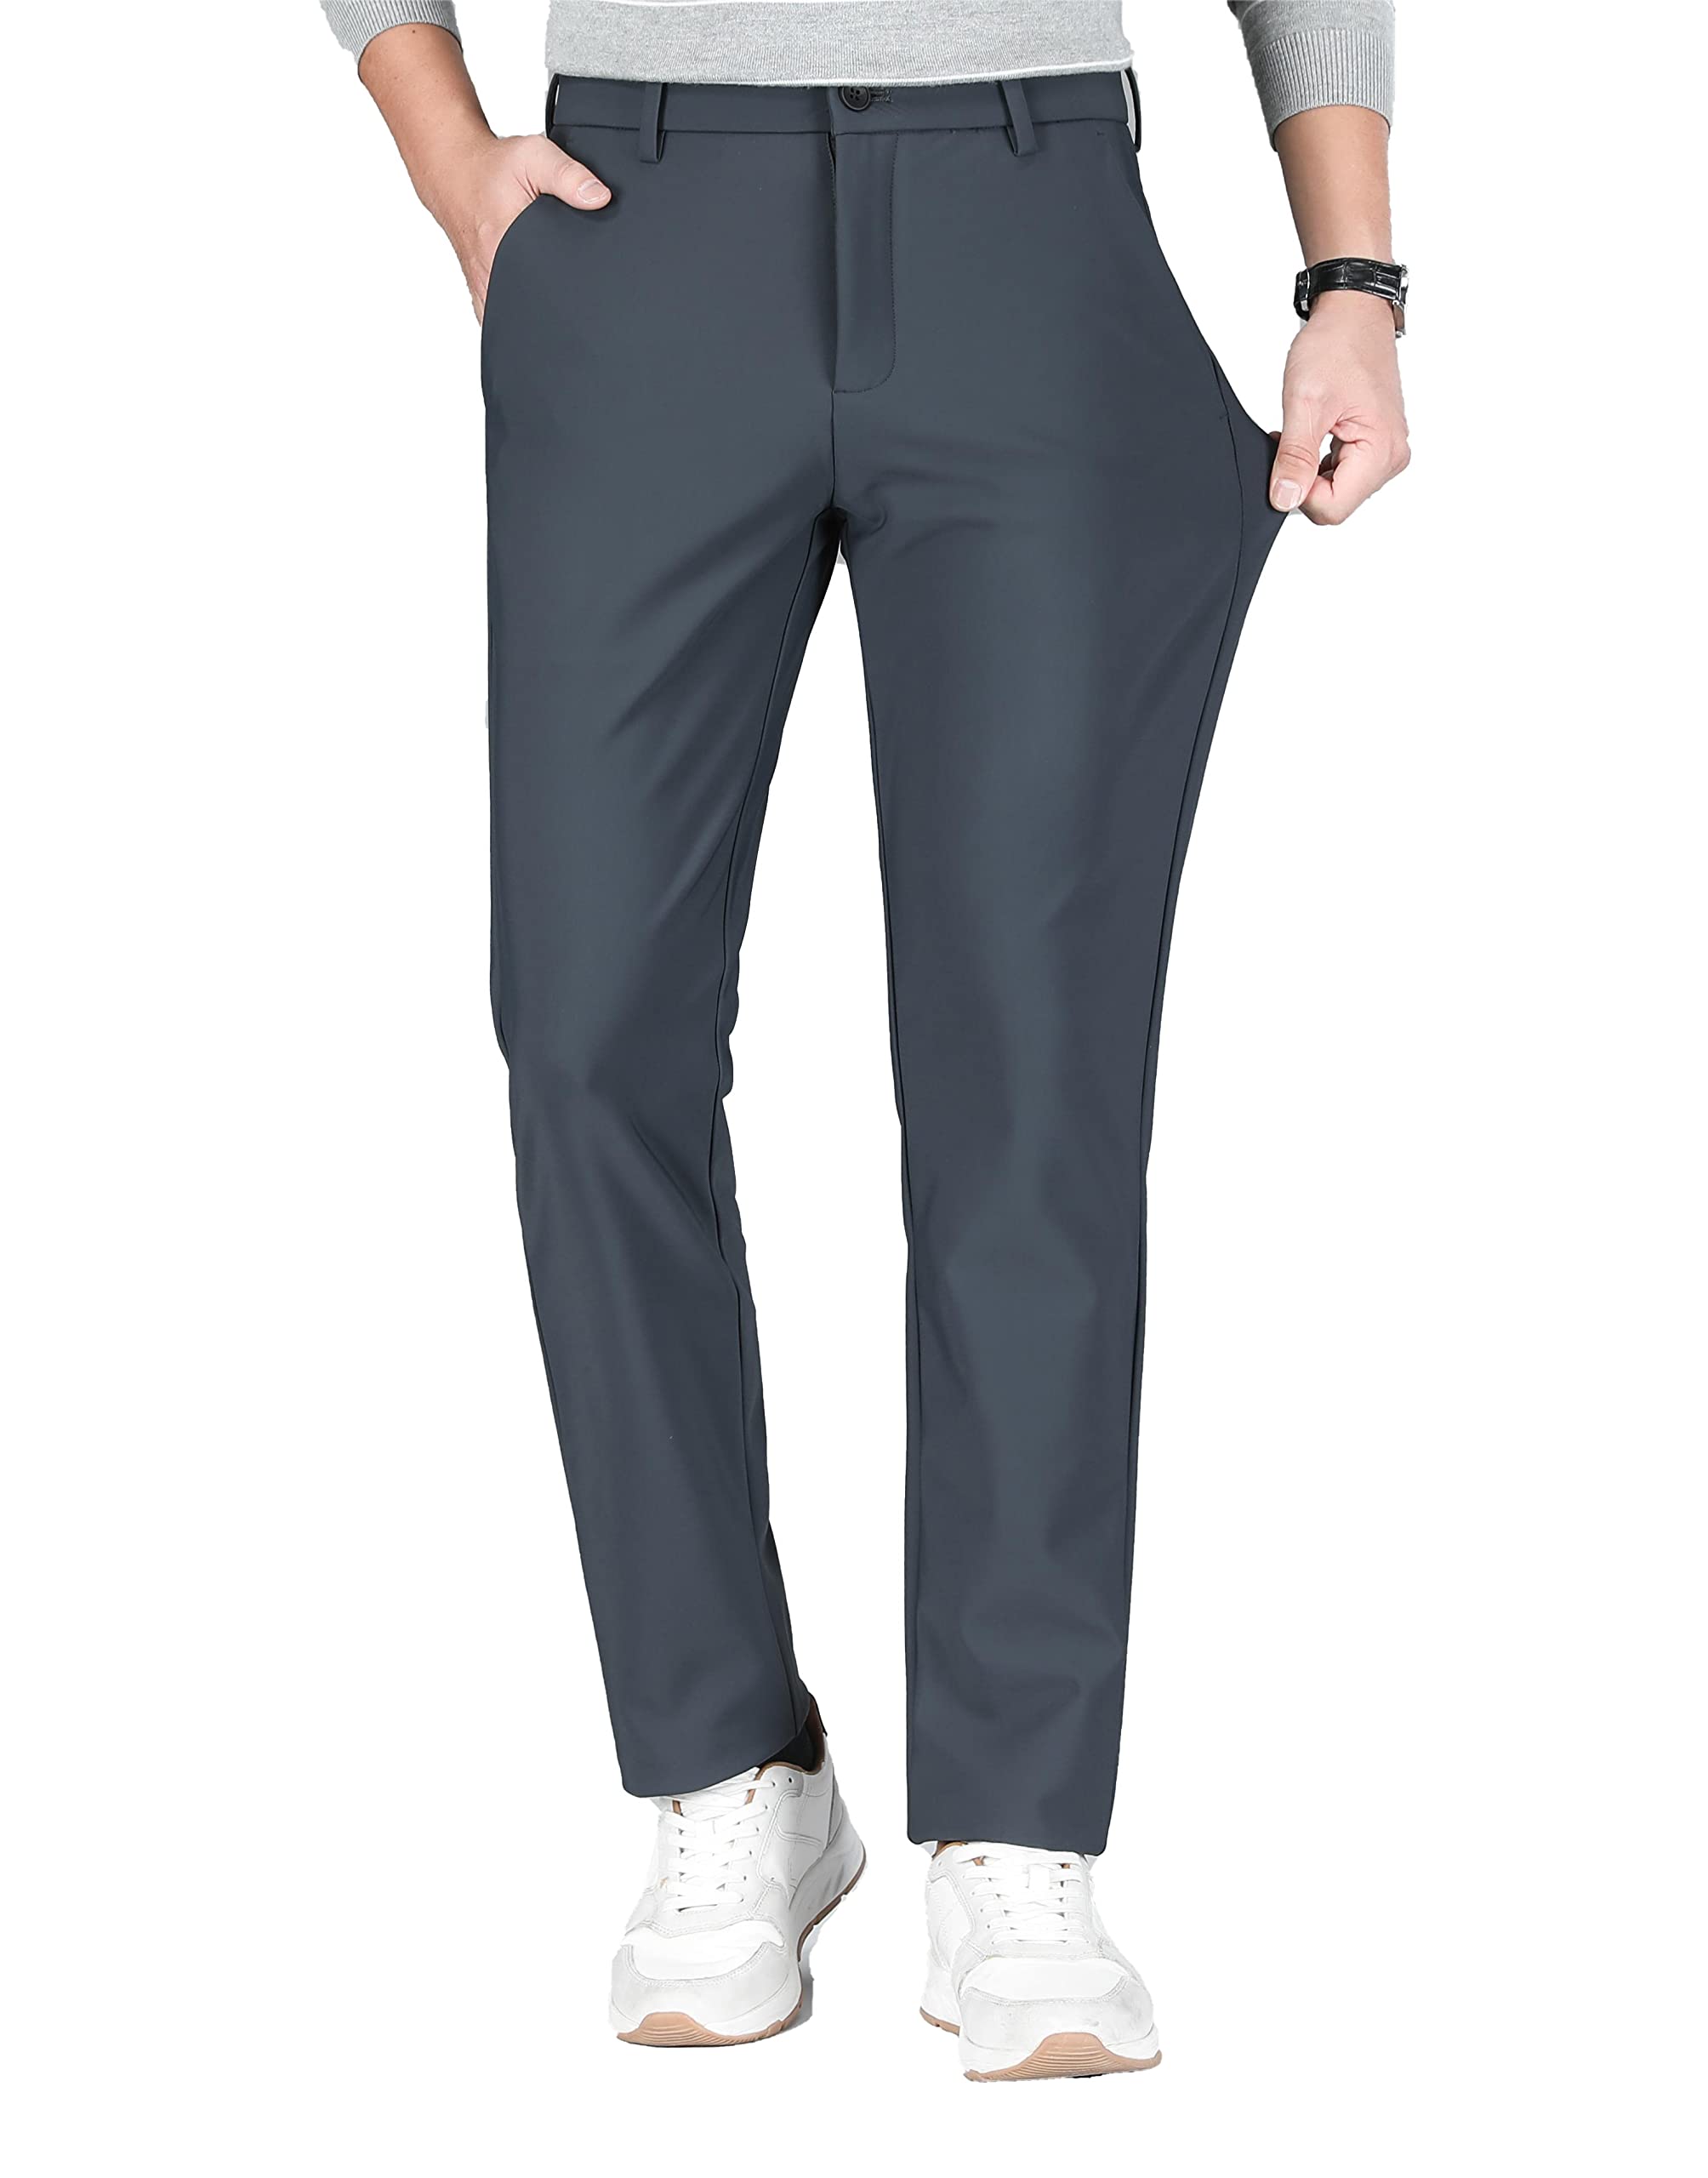 ALSLIAO Fashion Men Regular Stretch Casual Button Slim Fit Business Trouser Suit  Pants White 31 - Walmart.com